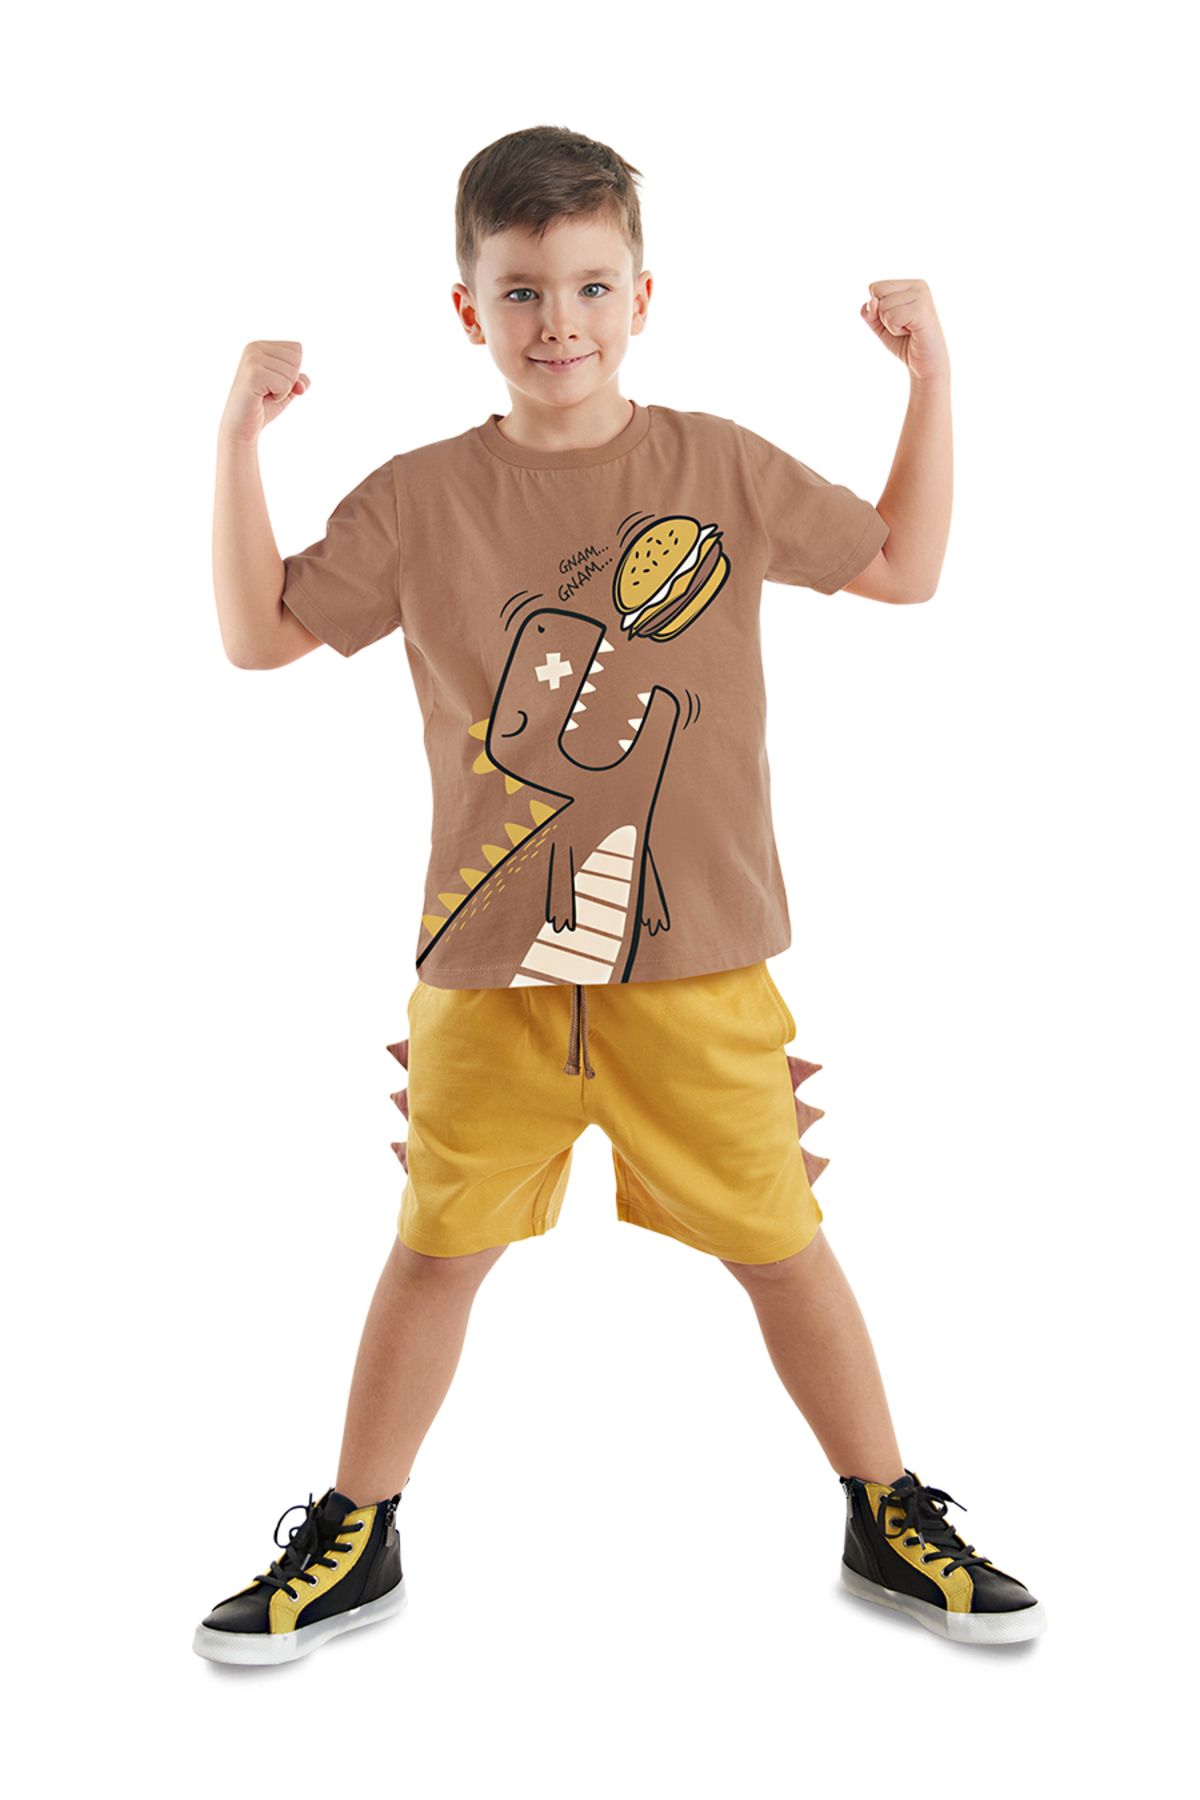 Denokids Oyuncu Dino Erkek Çocuk T-shirt Şort Takım